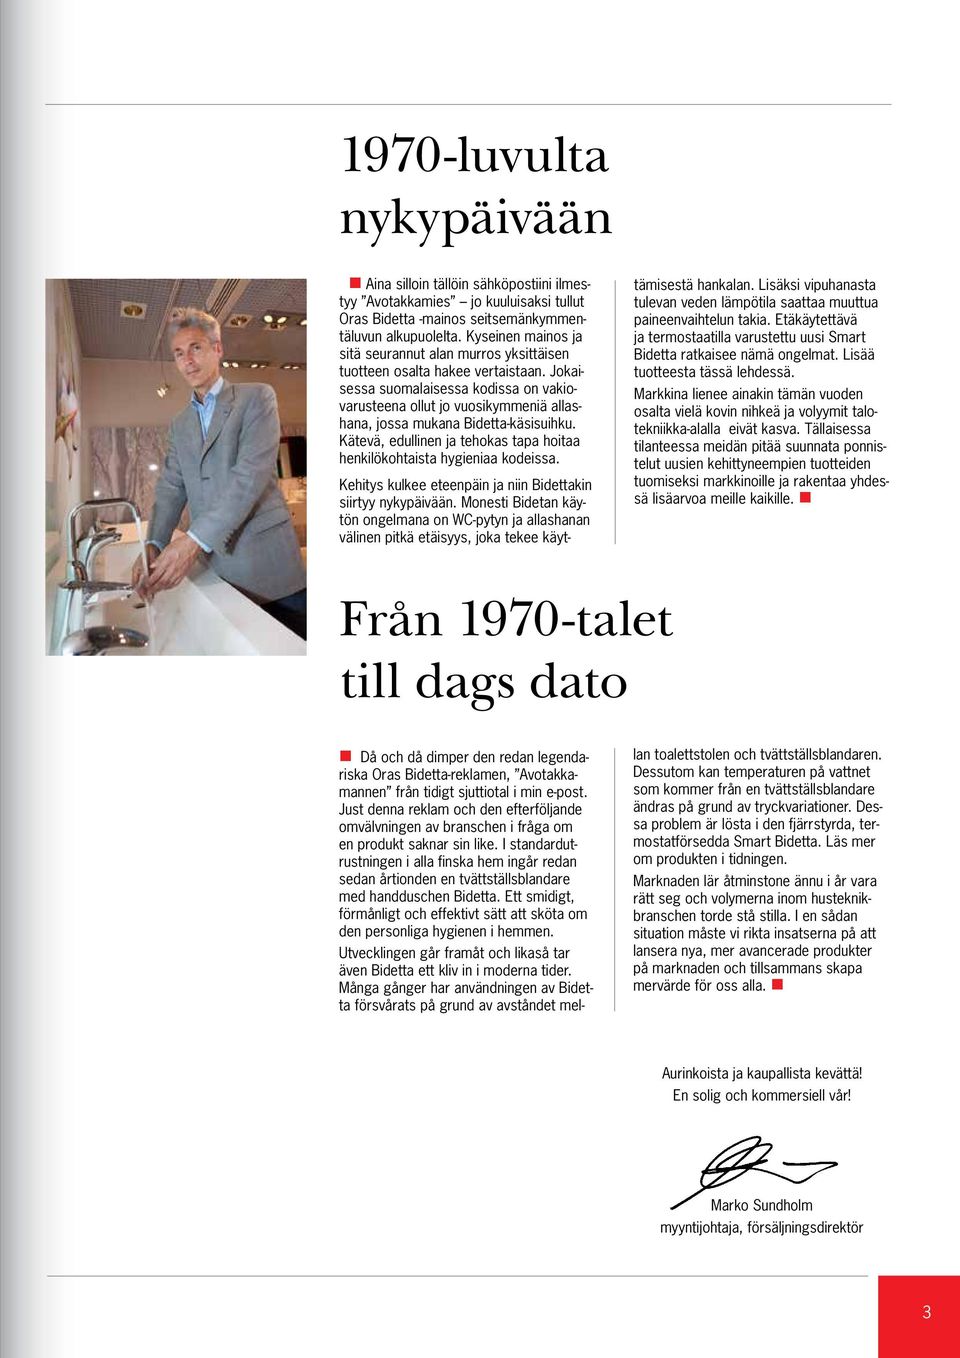 Jokaisessa suomalaisessa kodissa on vakiovarusteena ollut jo vuosikymmeniä allashana, jossa mukana Bidetta-käsisuihku. Kätevä, edullinen ja tehokas tapa hoitaa henkilökohtaista hygieniaa kodeissa.